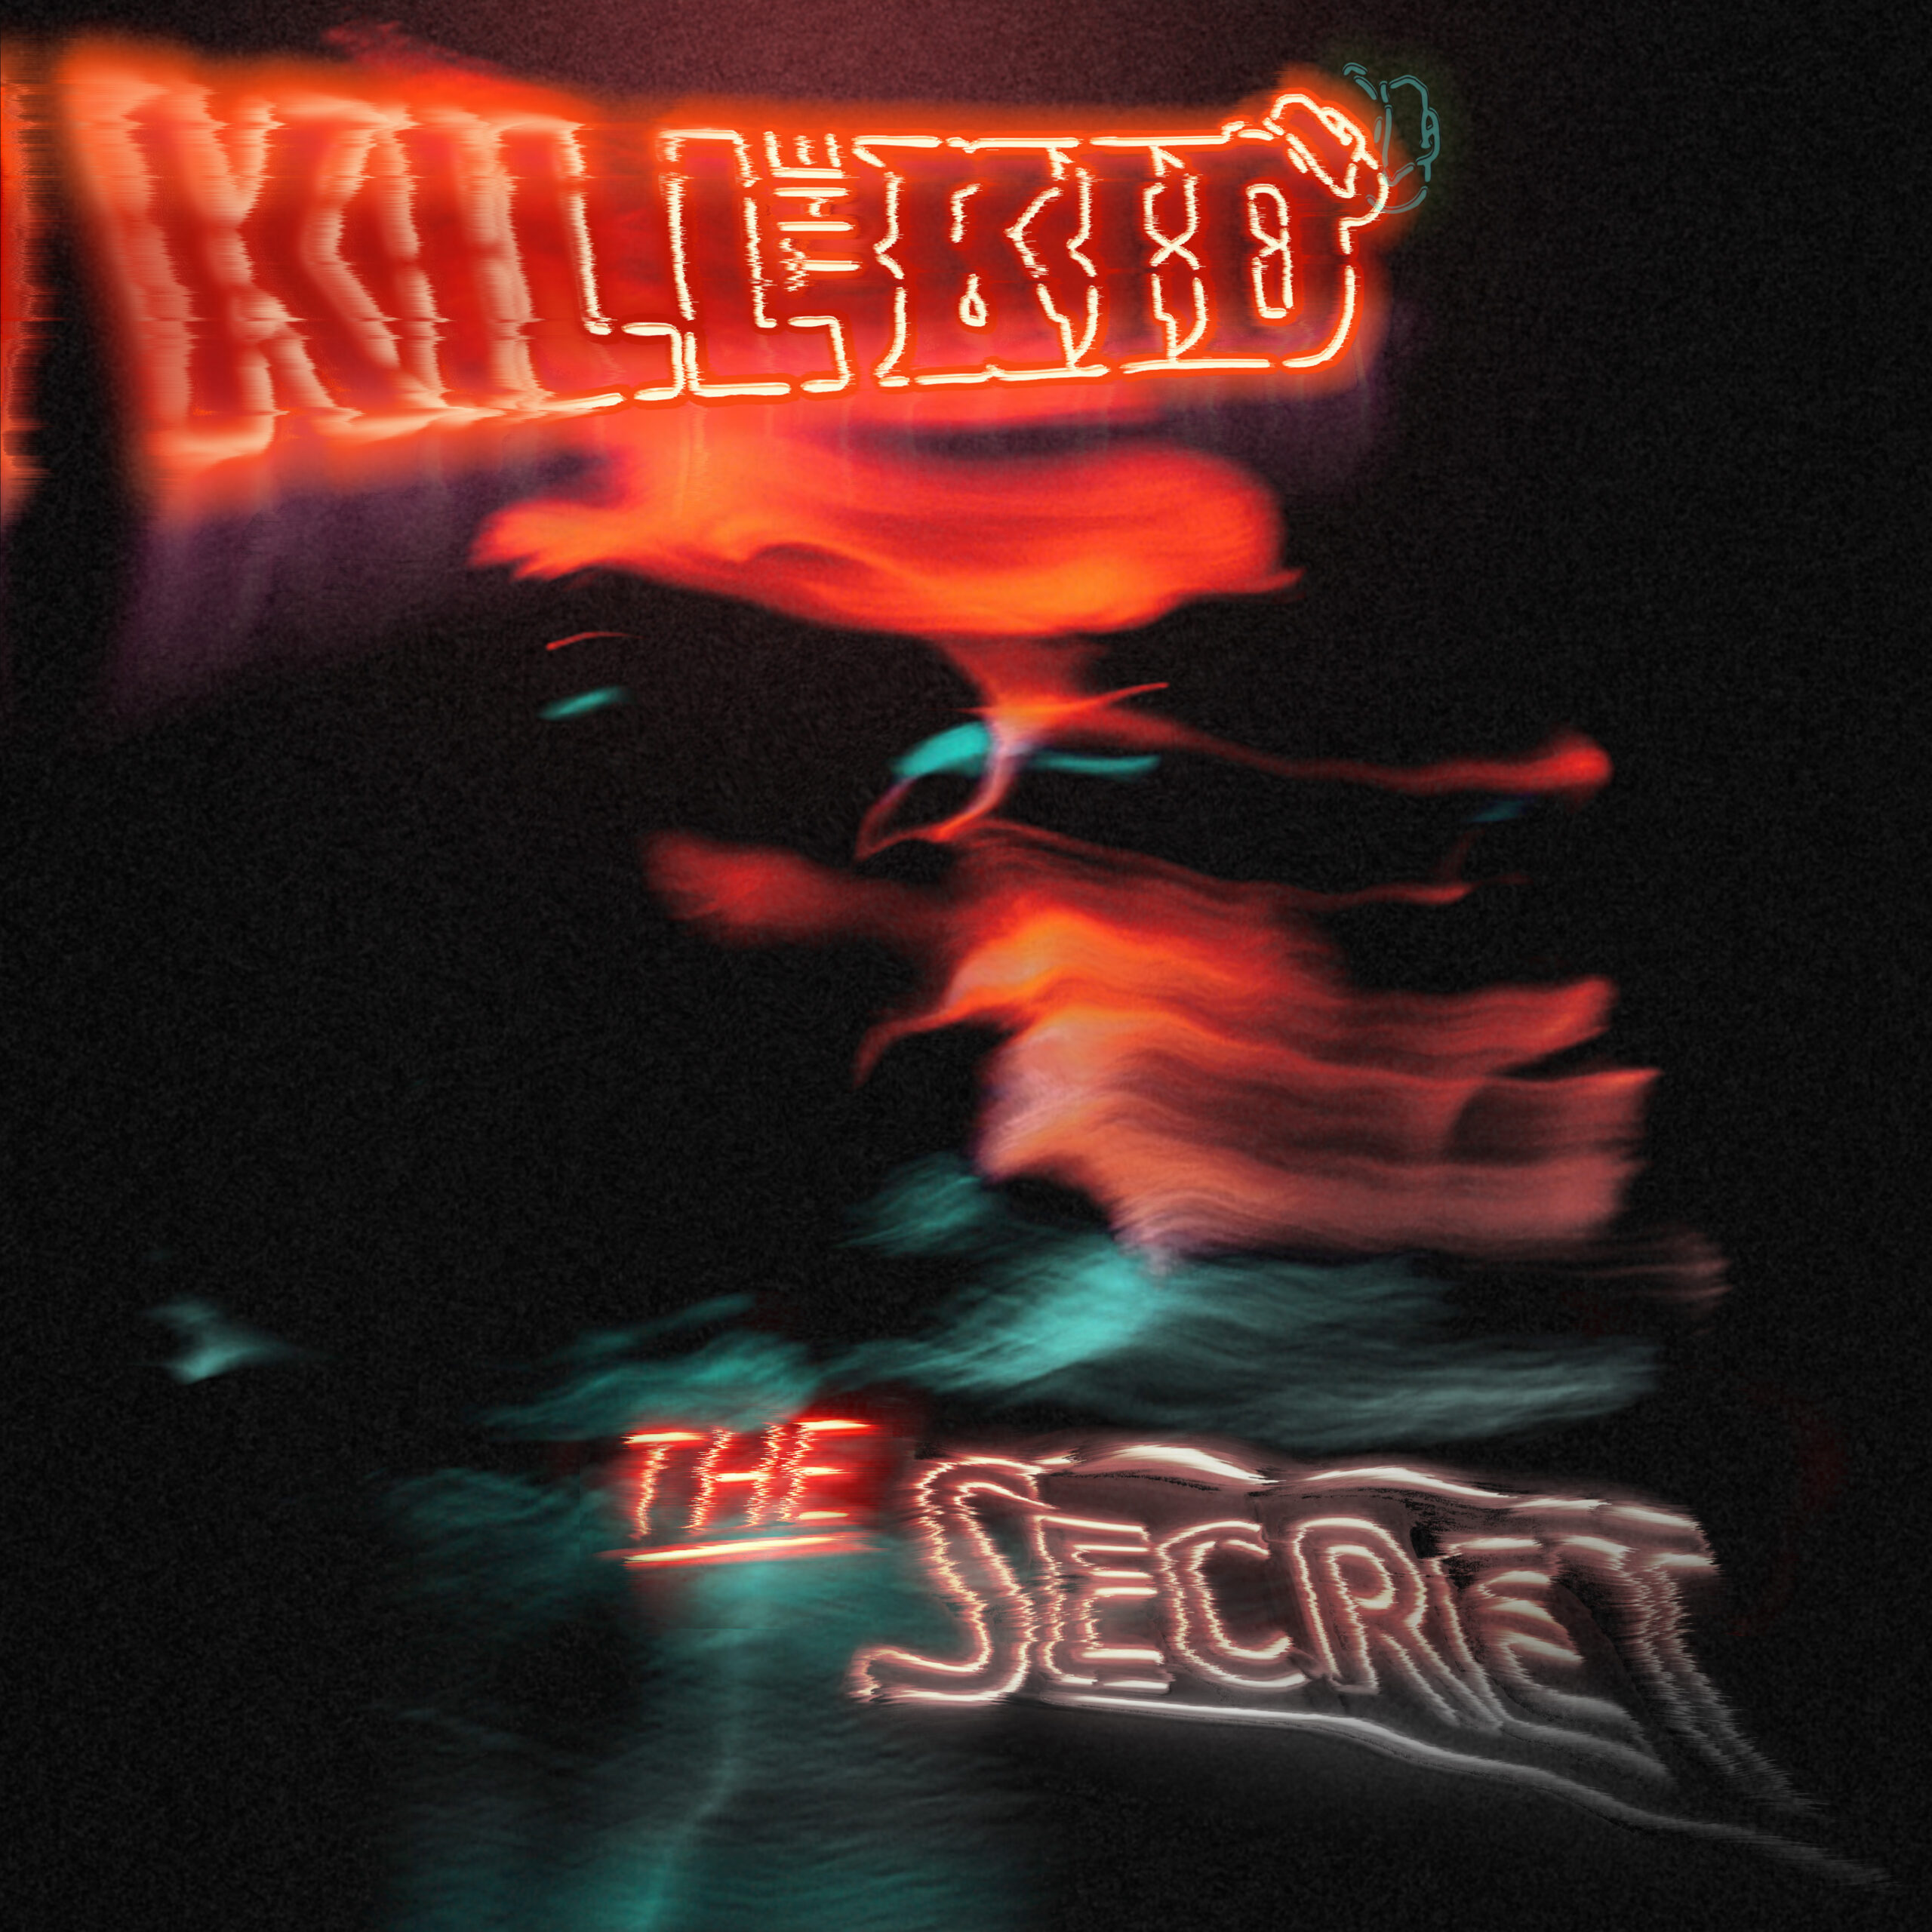  Explora el impacto del nuevo EP “The Secret” de Kill The Kid: Fusión de Rock y Punk